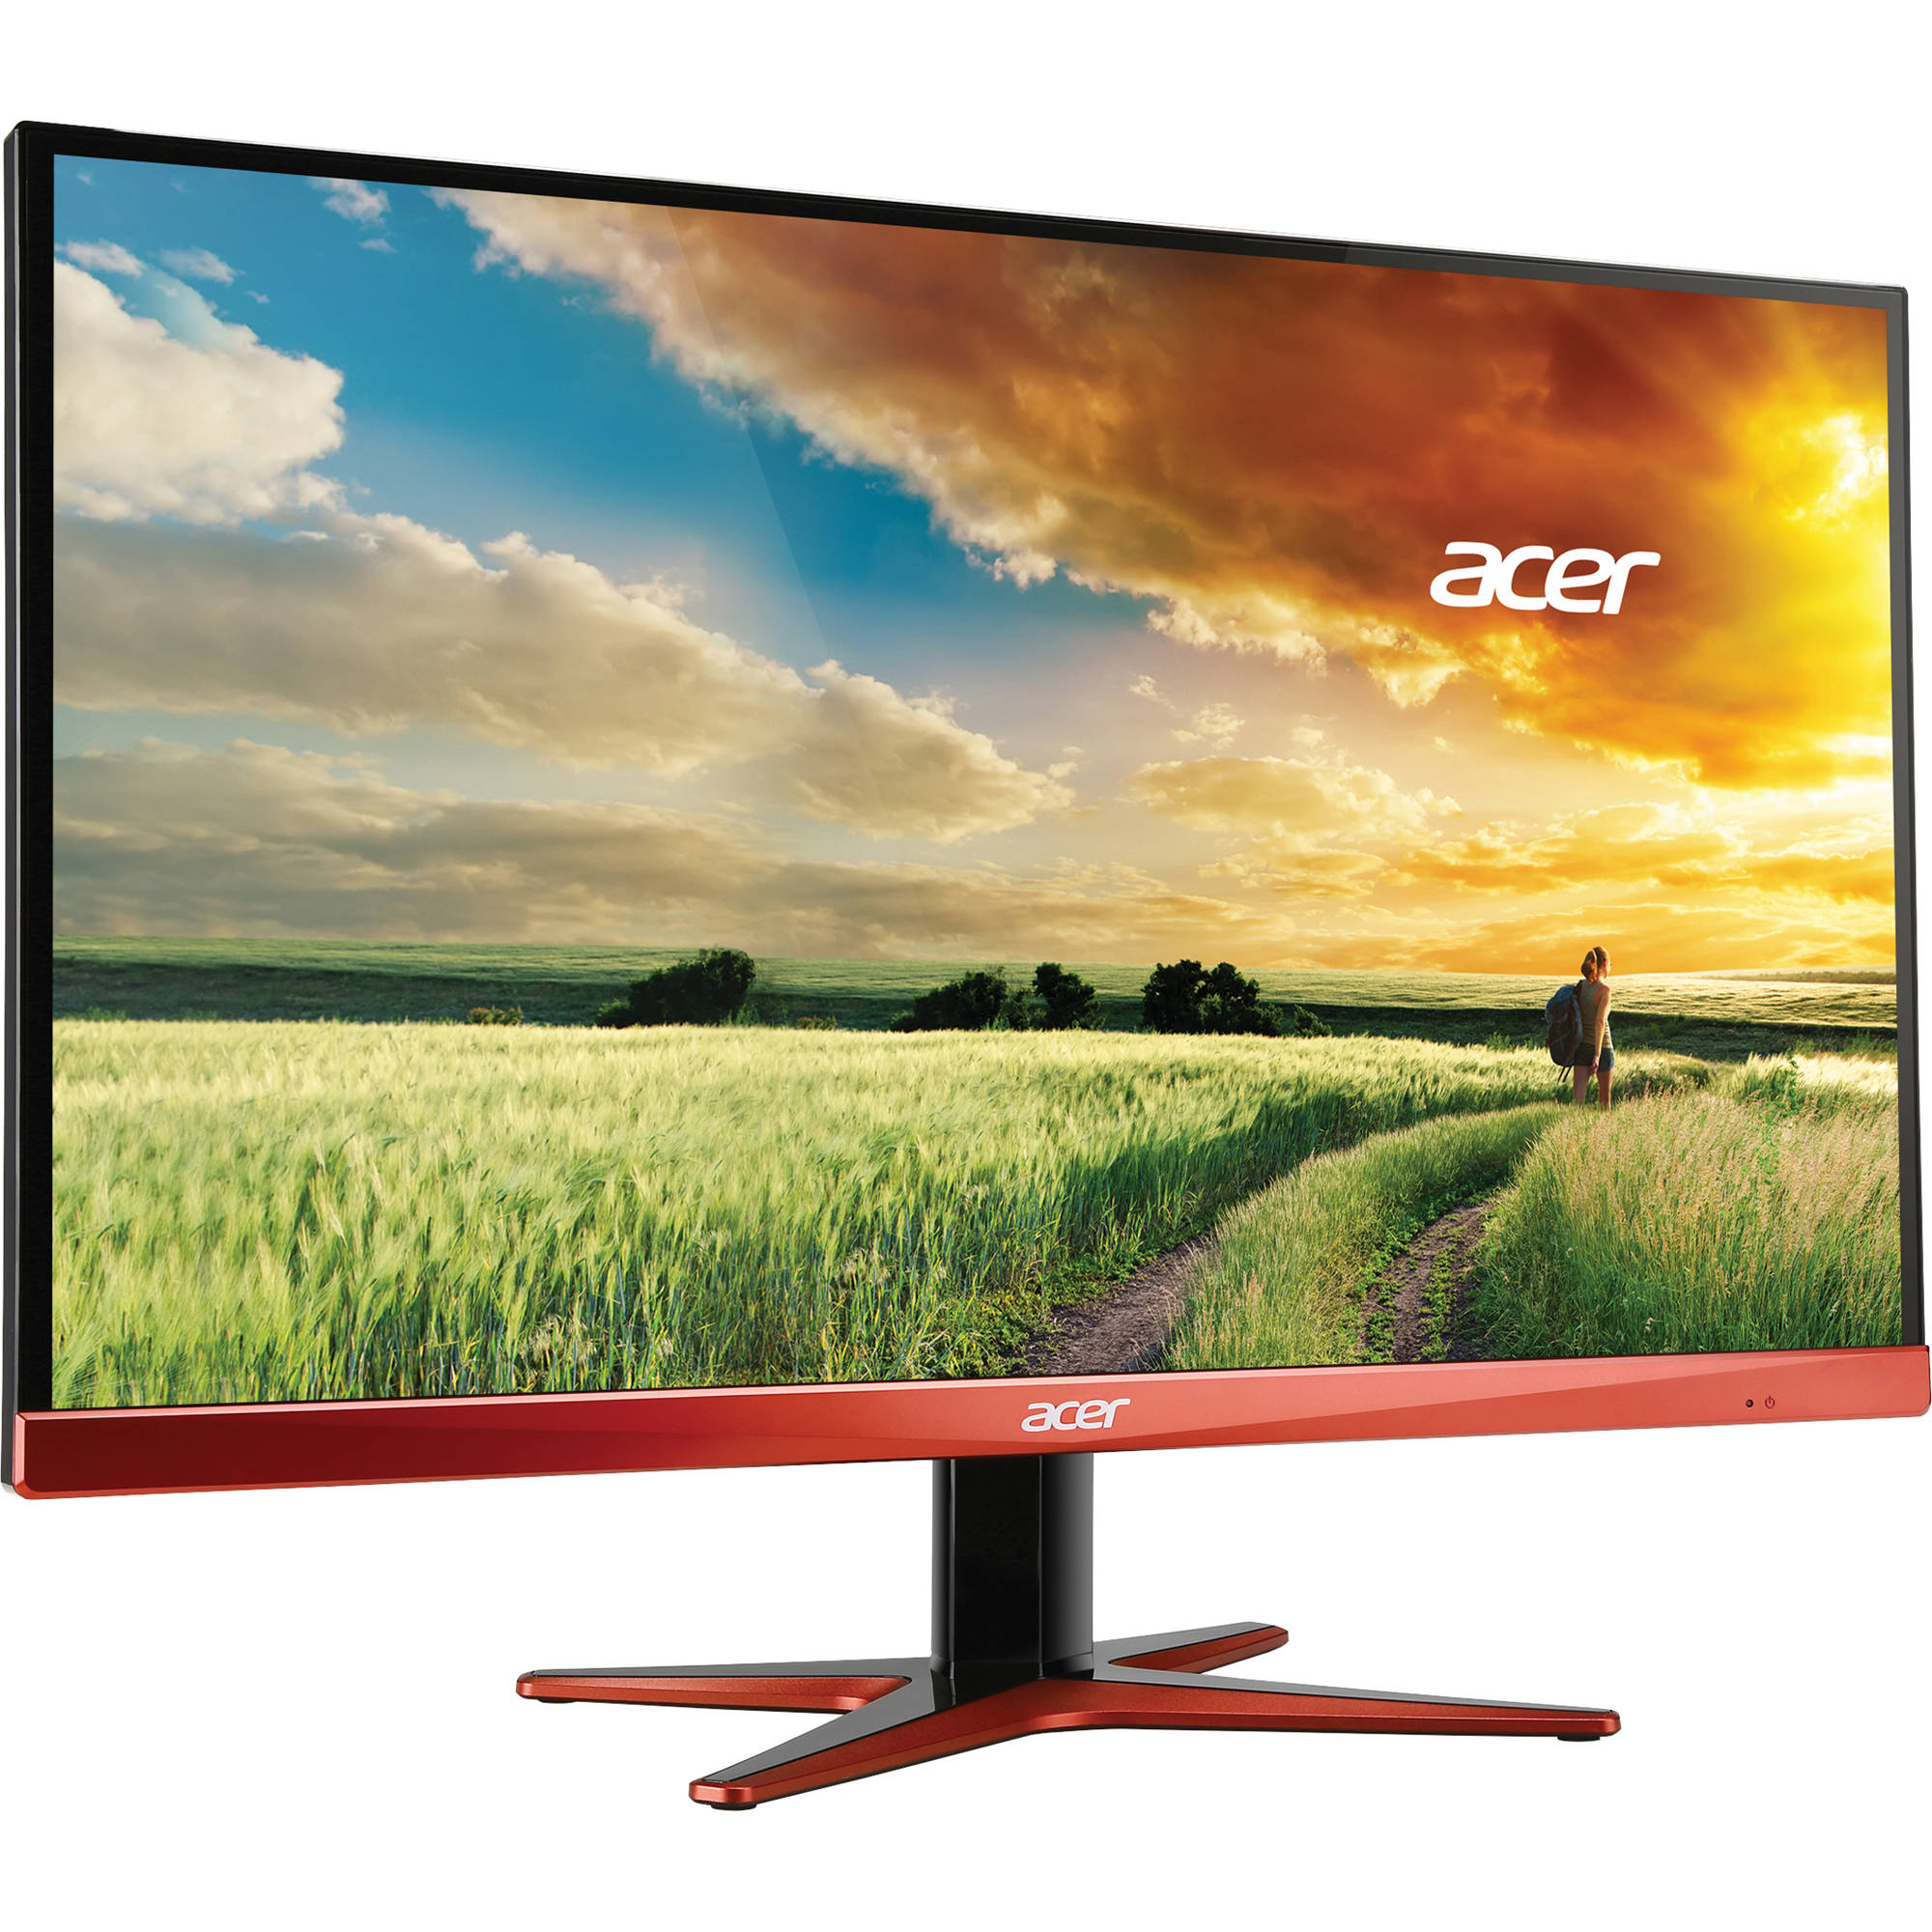 Acer XG270HU omidpx Monitor LCD con retroiluminación LED de pantalla ancha de 27&quot;